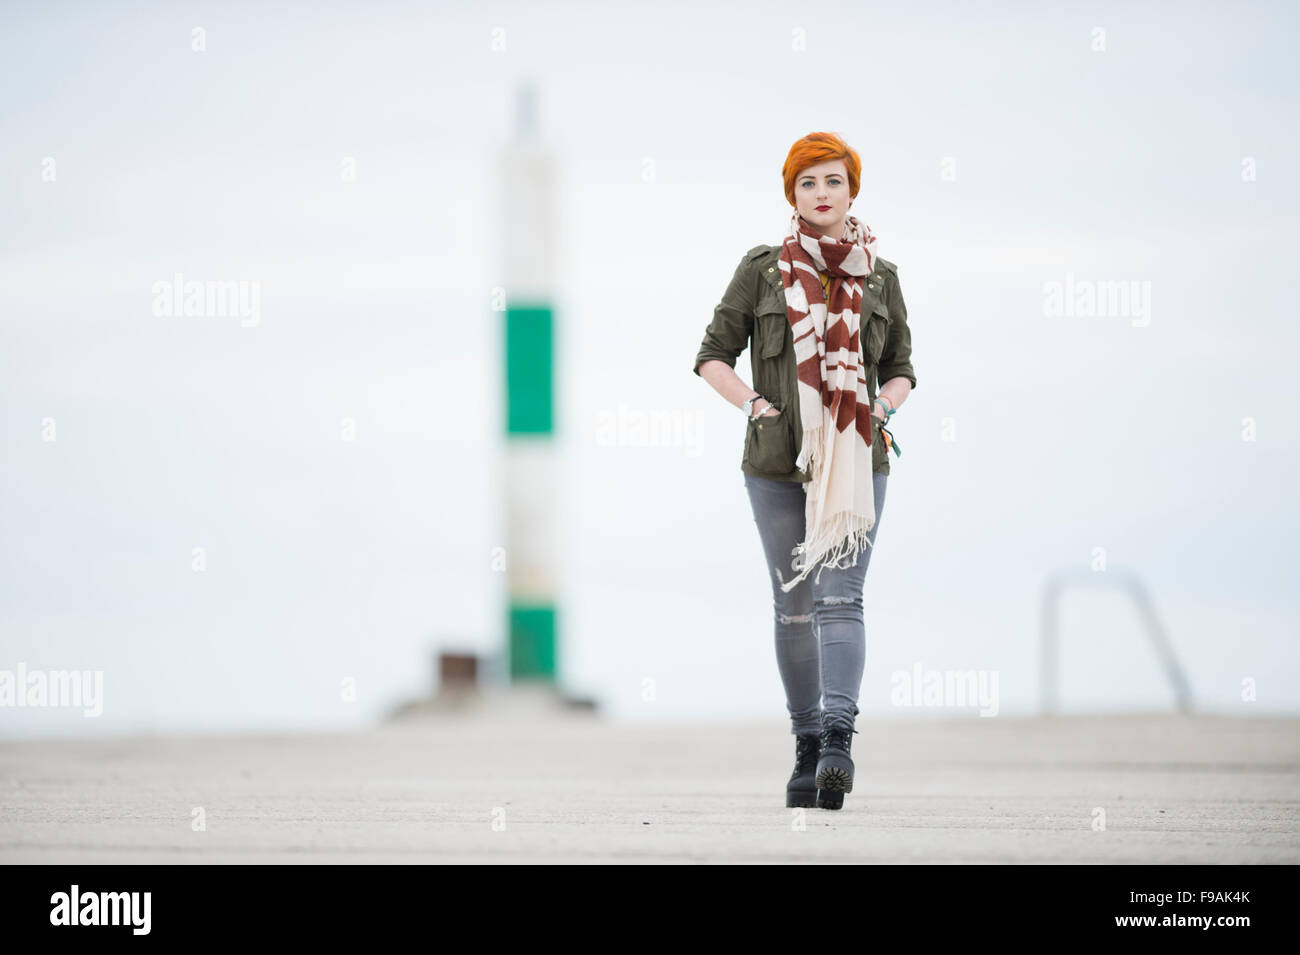 Un seul adolescent solo femme fille teint de peau pâle et rouge flamme cheveux courts portant un manteau veste verte et un foulard , marcher marcher par elle-même, à l'extérieur, UK Banque D'Images